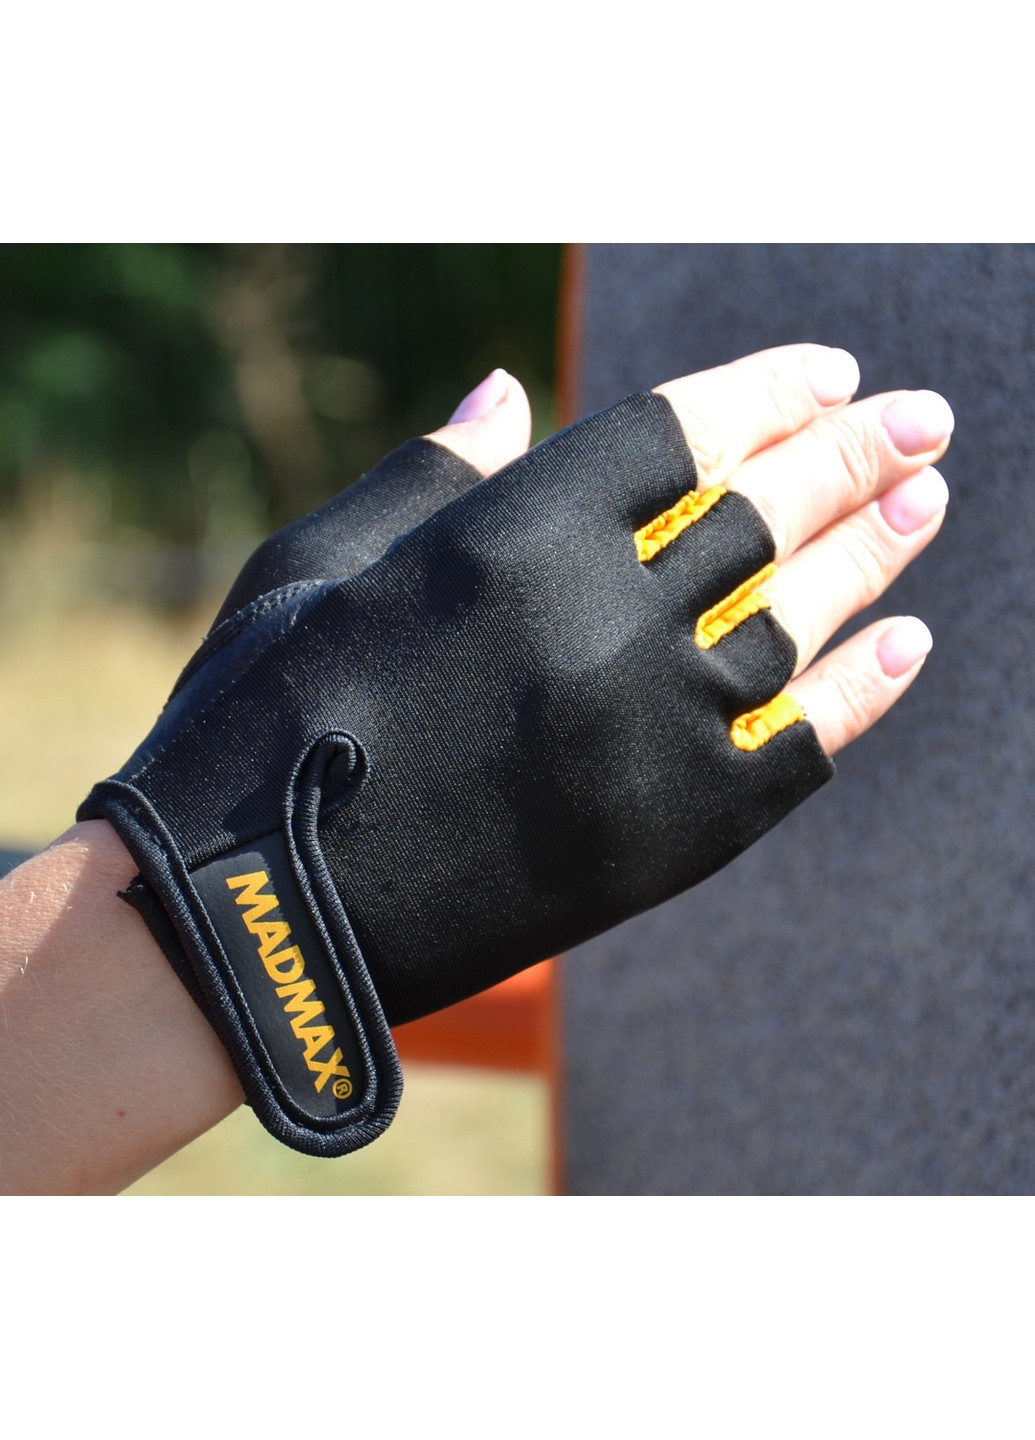 Унісекс рукавички для фітнесу L Mad Max (267657610)